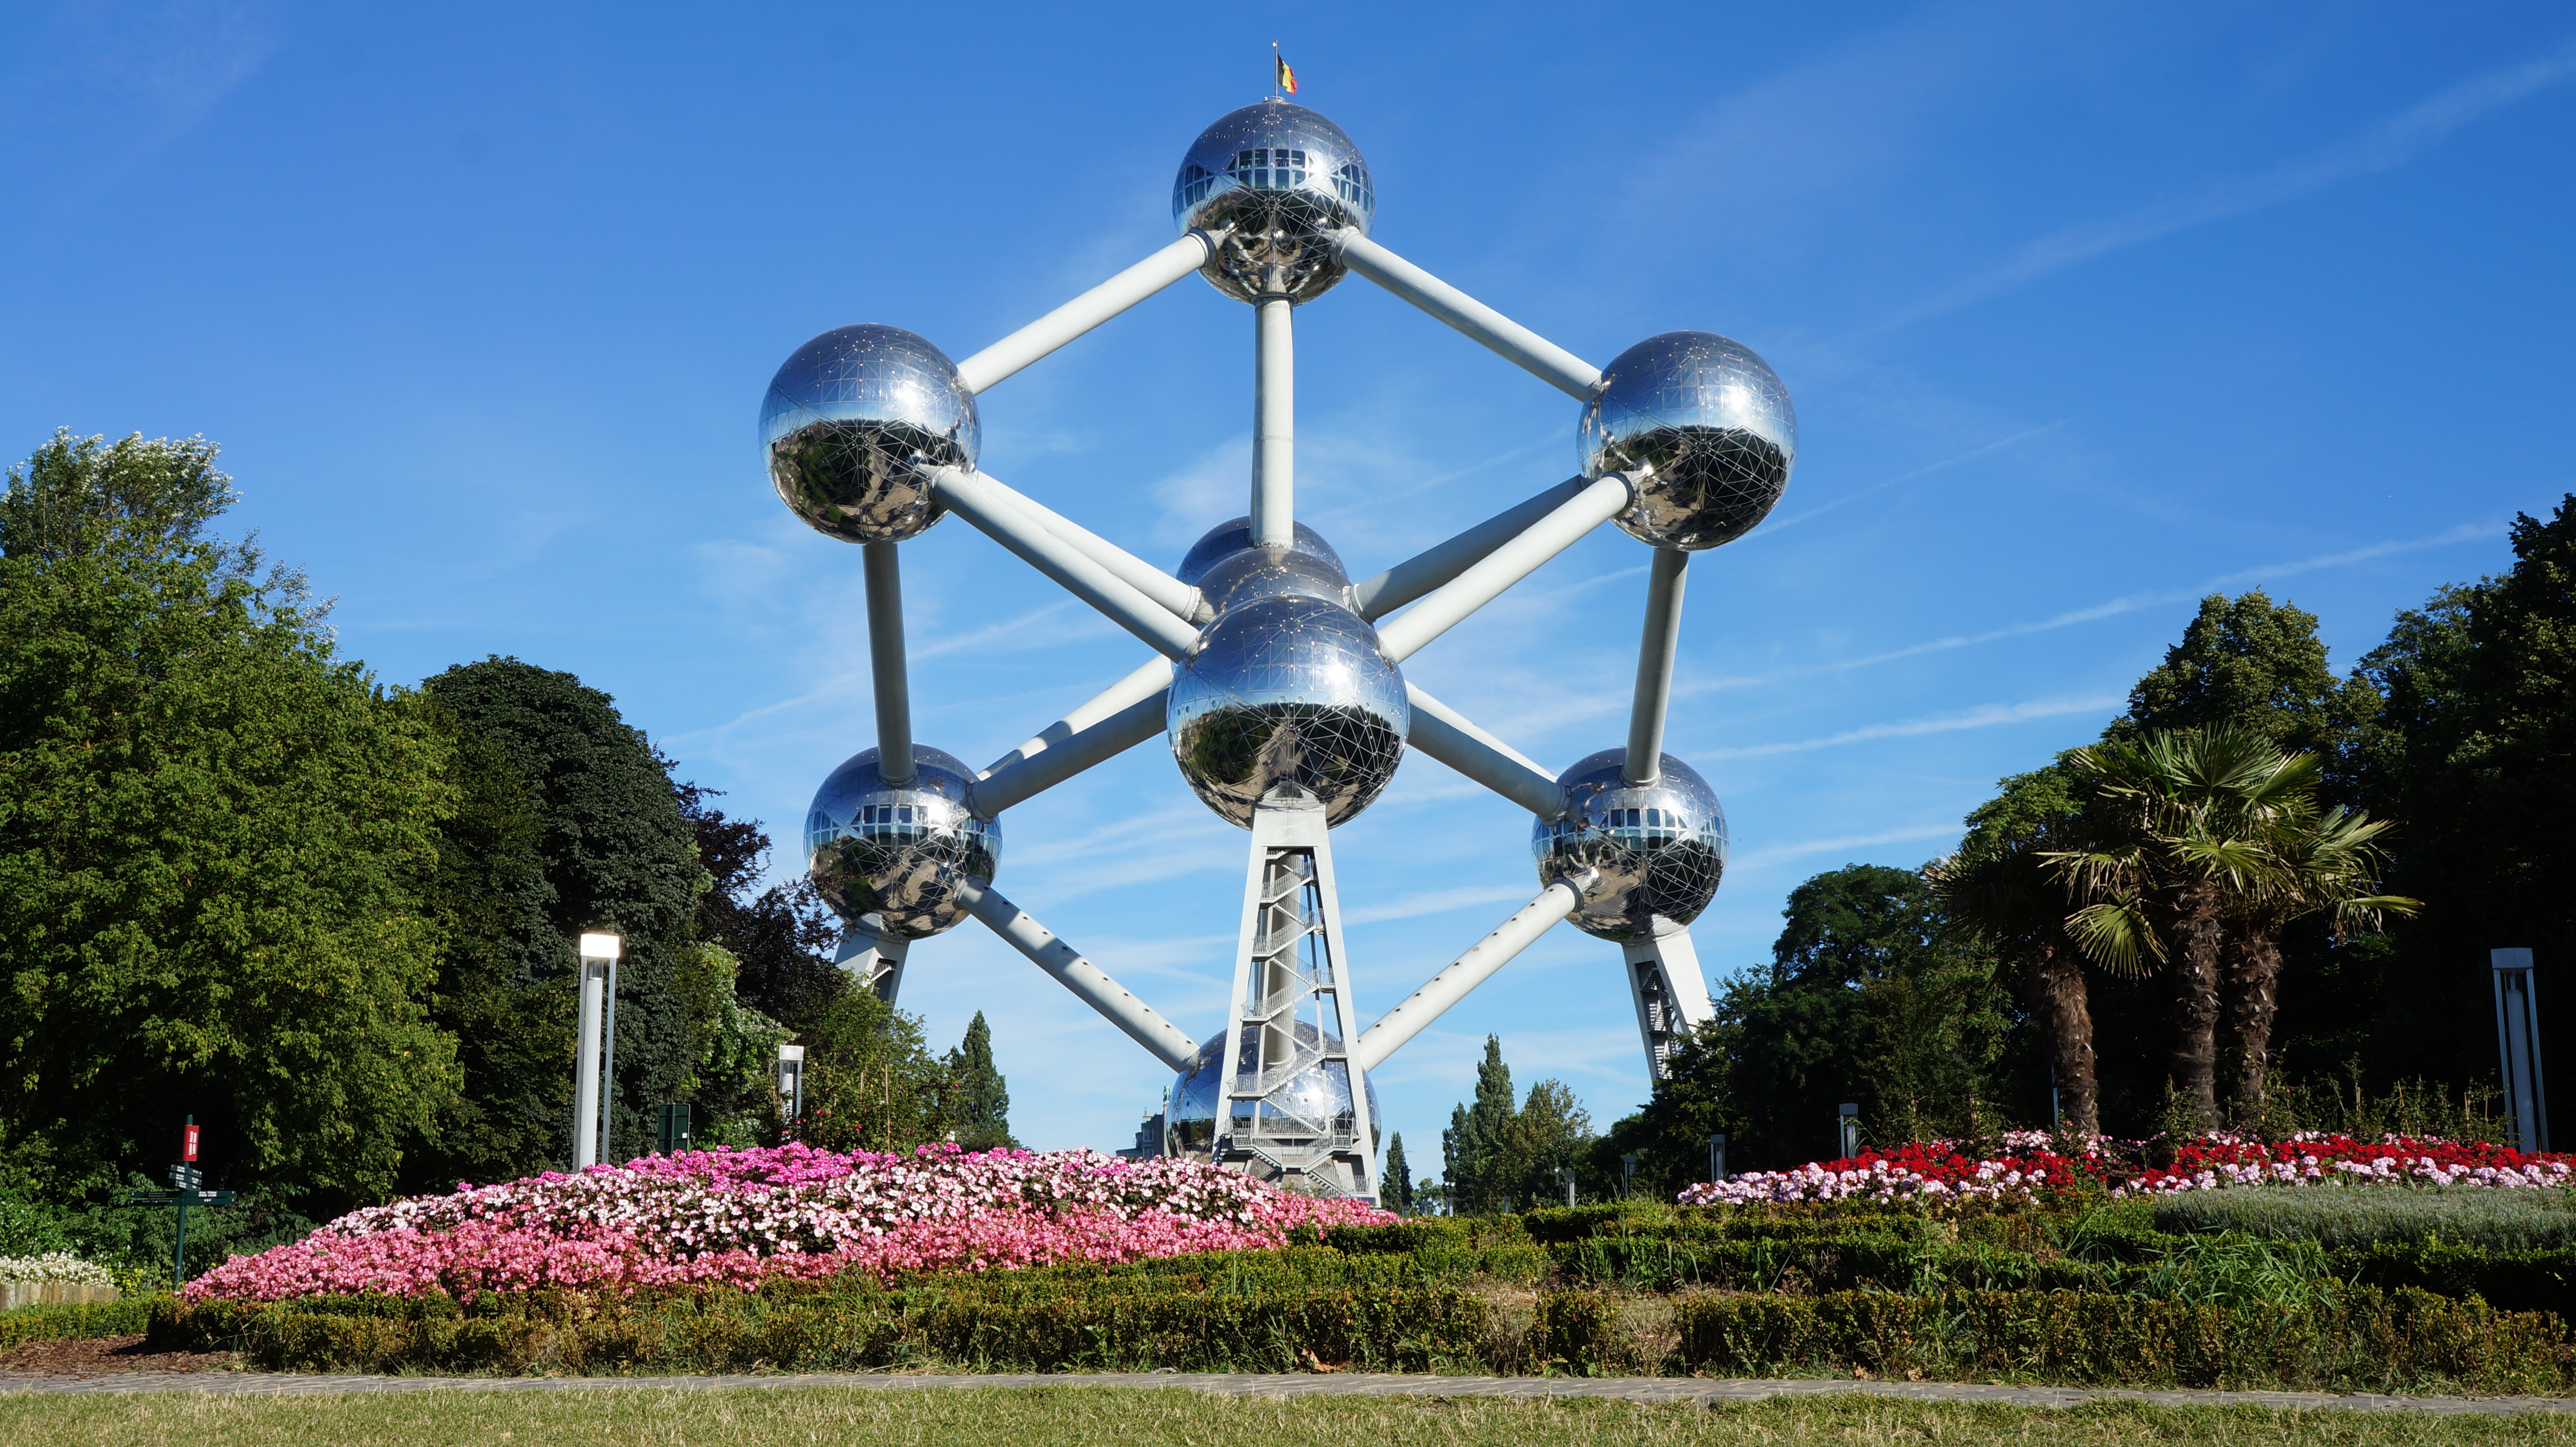 Atomium Brussels, Belgium